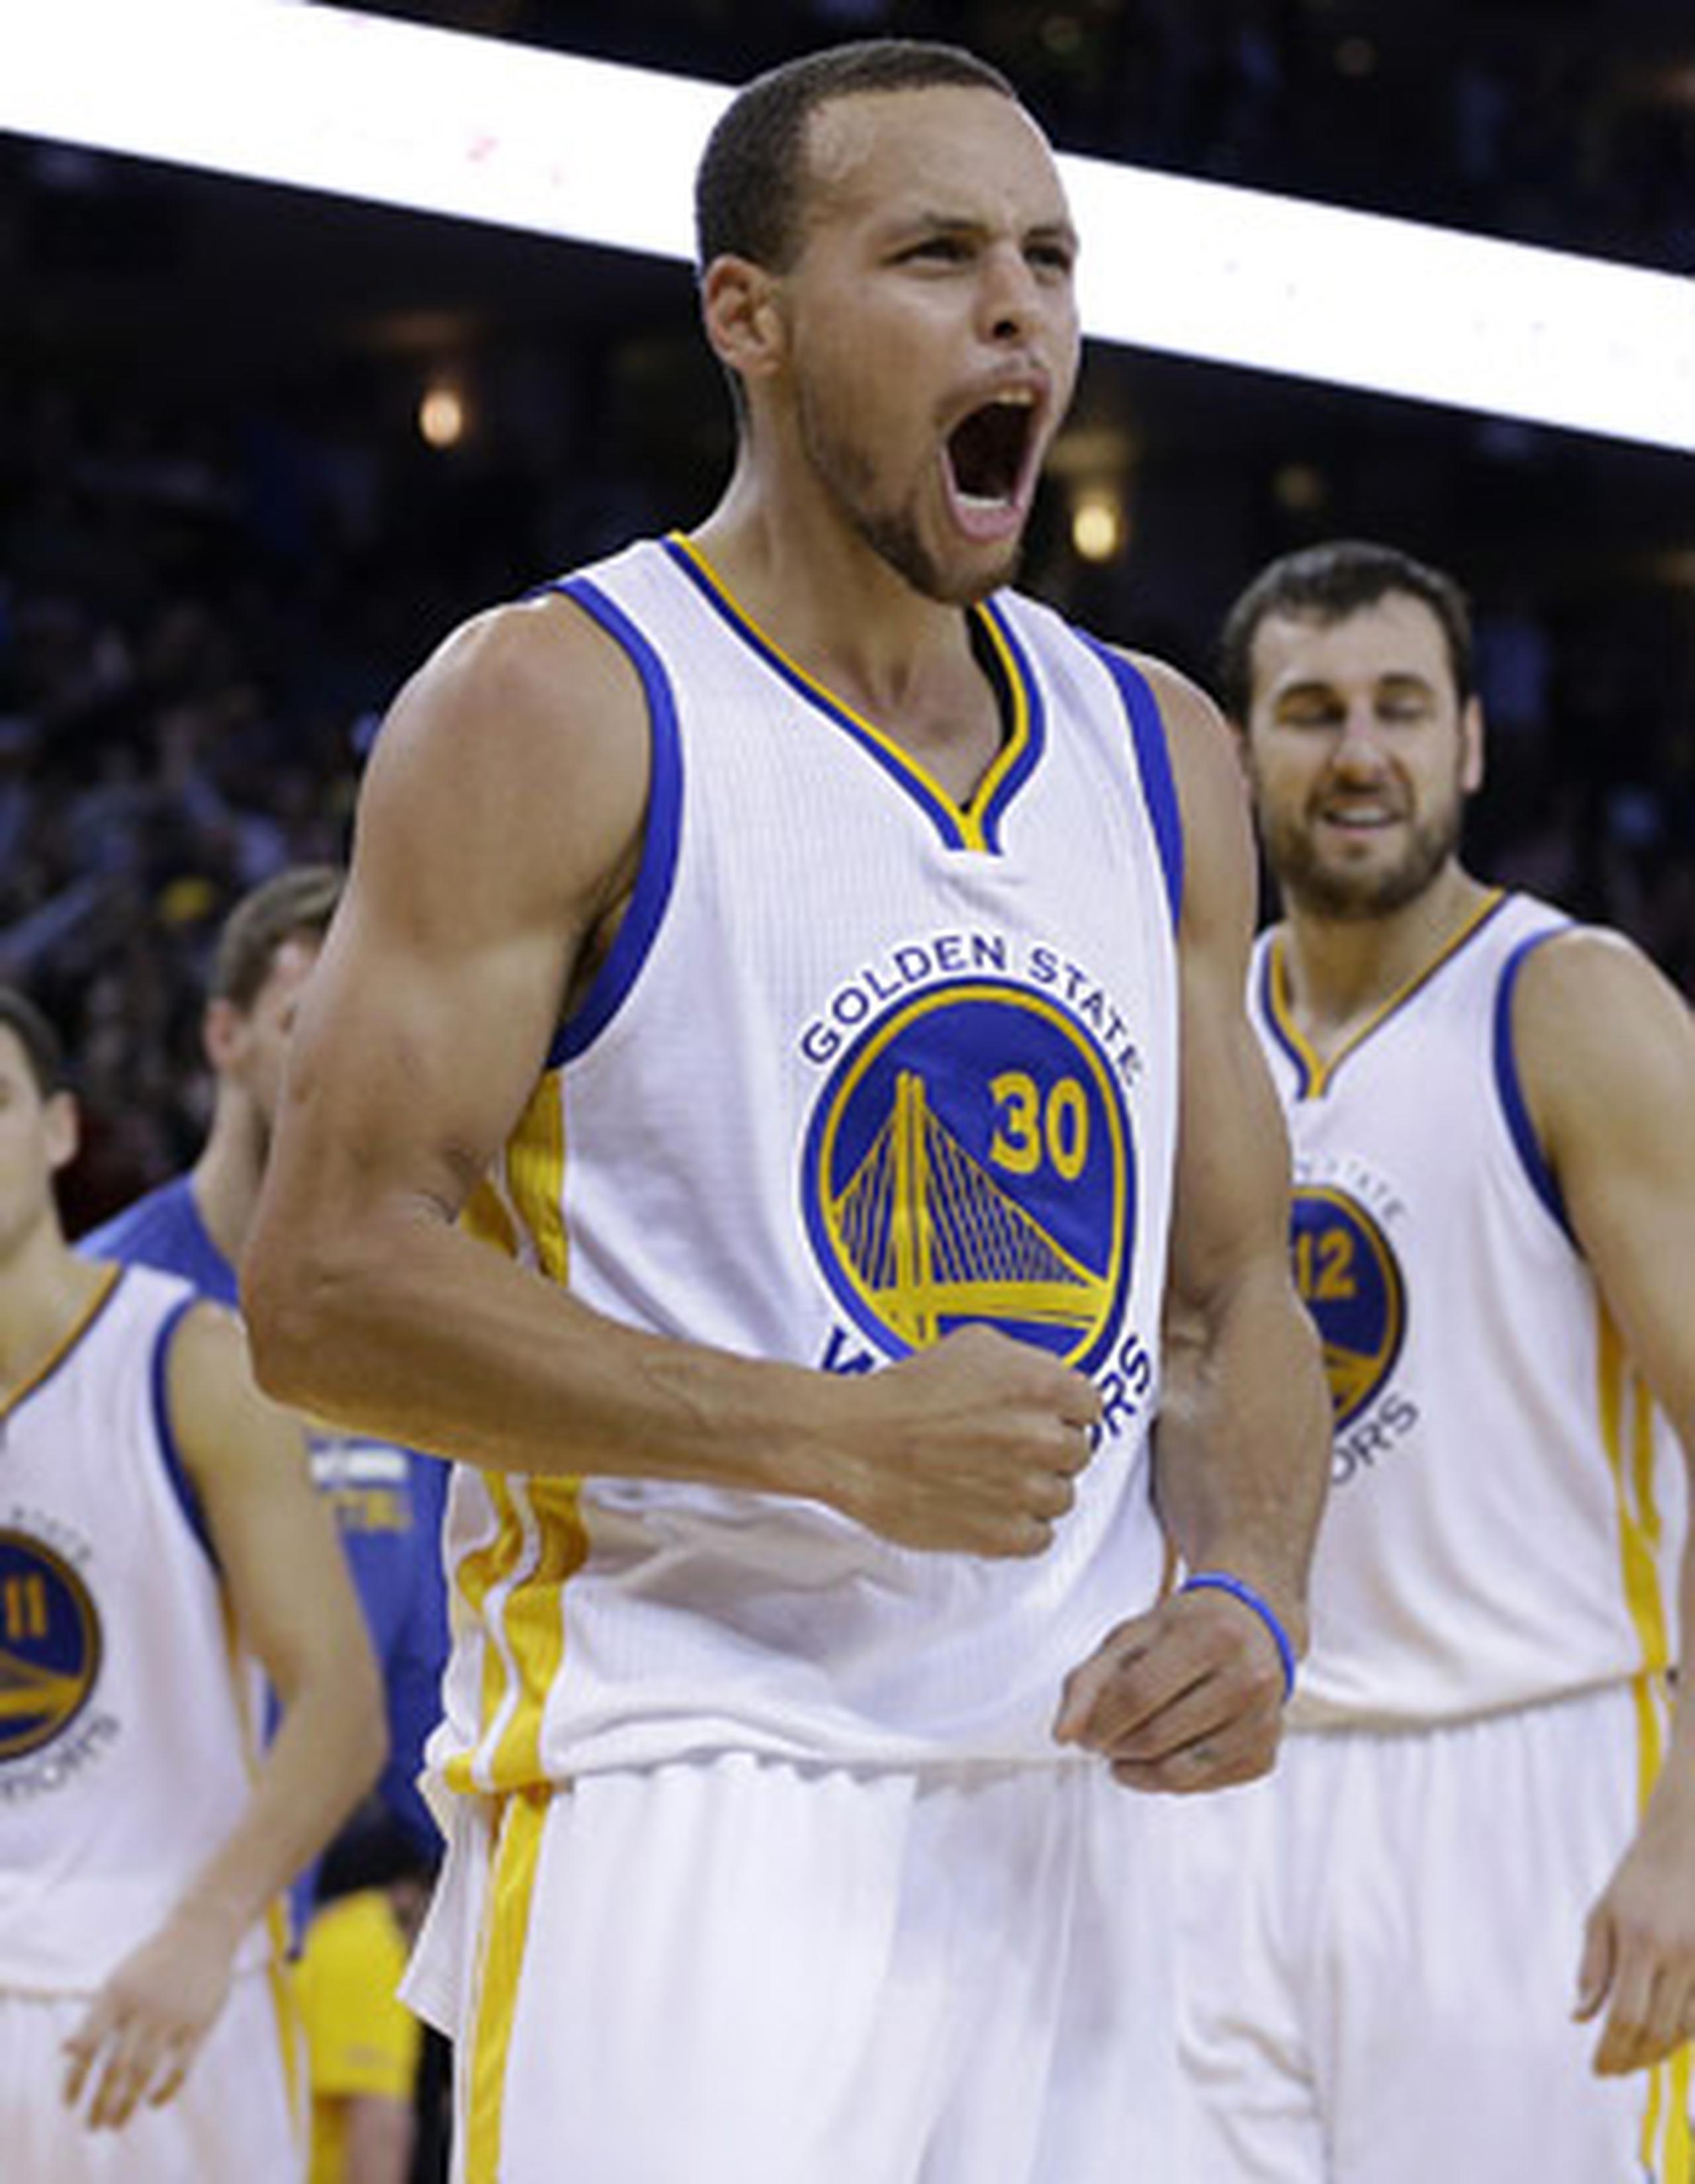 Para varios medios en Estados Unidos, Stephen Curry es considerado el Jugador Más Valioso hasta el momento en la NBA. Curry está promediando 23.1 puntos, 7.7 asistencias y 5.1 rebotes. (AP / Ben Margot)